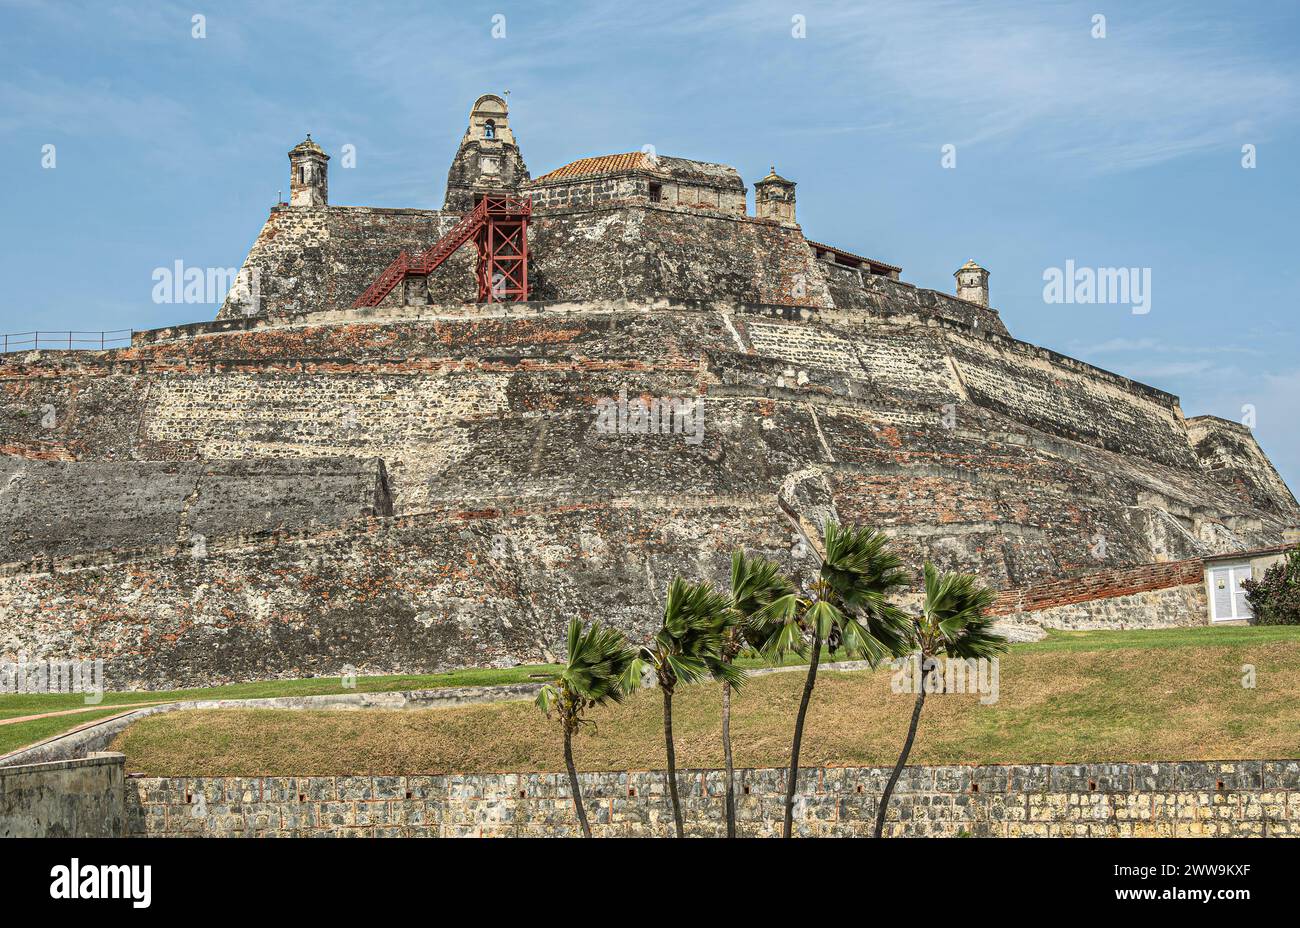 Cartagena, Kolumbien - 25. Juli 2023: Die Festung San Felipe de Barajas wird von unten nach oben gebaut. Gegen blaue Wolkenlandschaft. Rasen und Grün Stockfoto